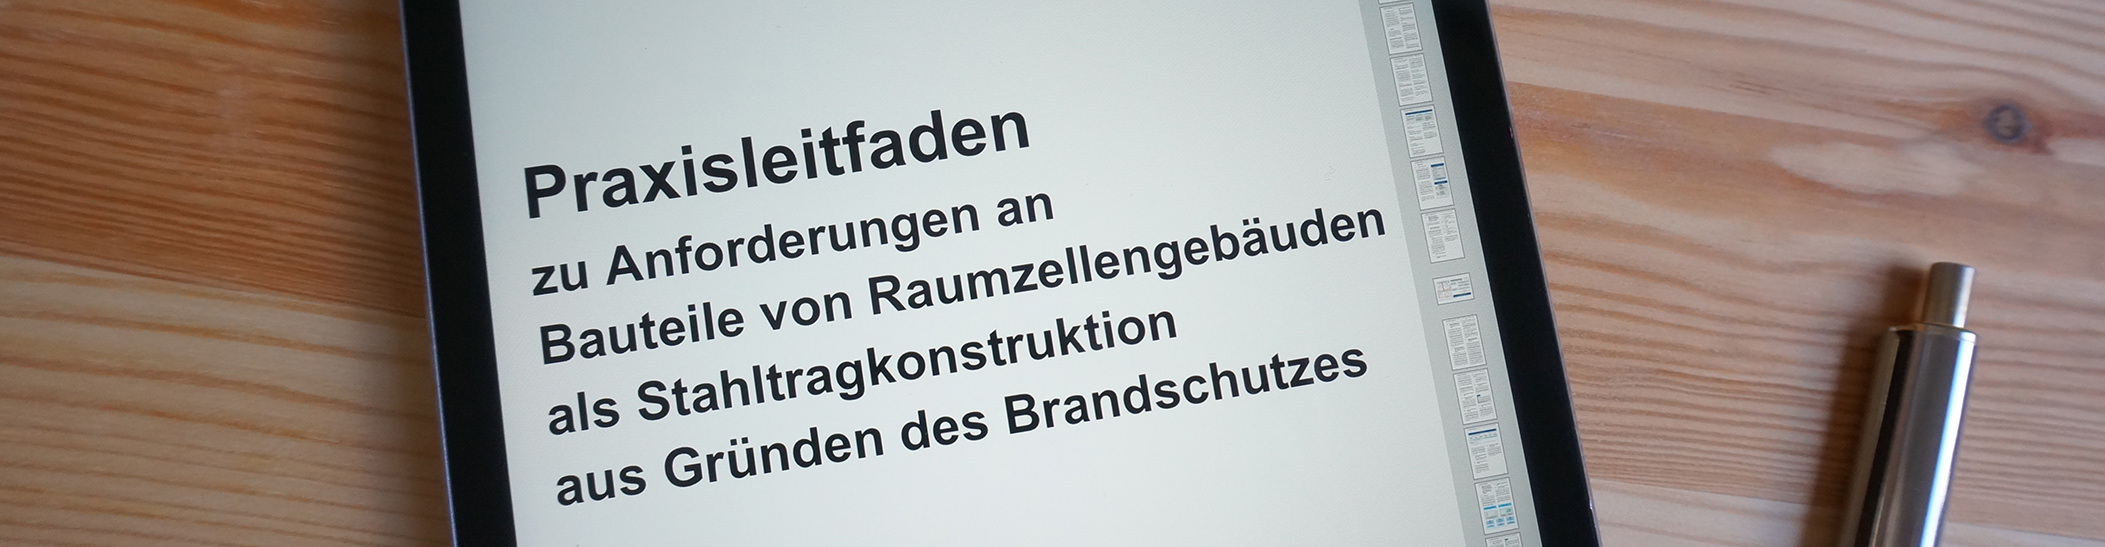 Header-ModulbauёCampus-GmbH Spotlights: Erster Praxisleitfaden für brandschutztechnische Nachweise im Modulbau 